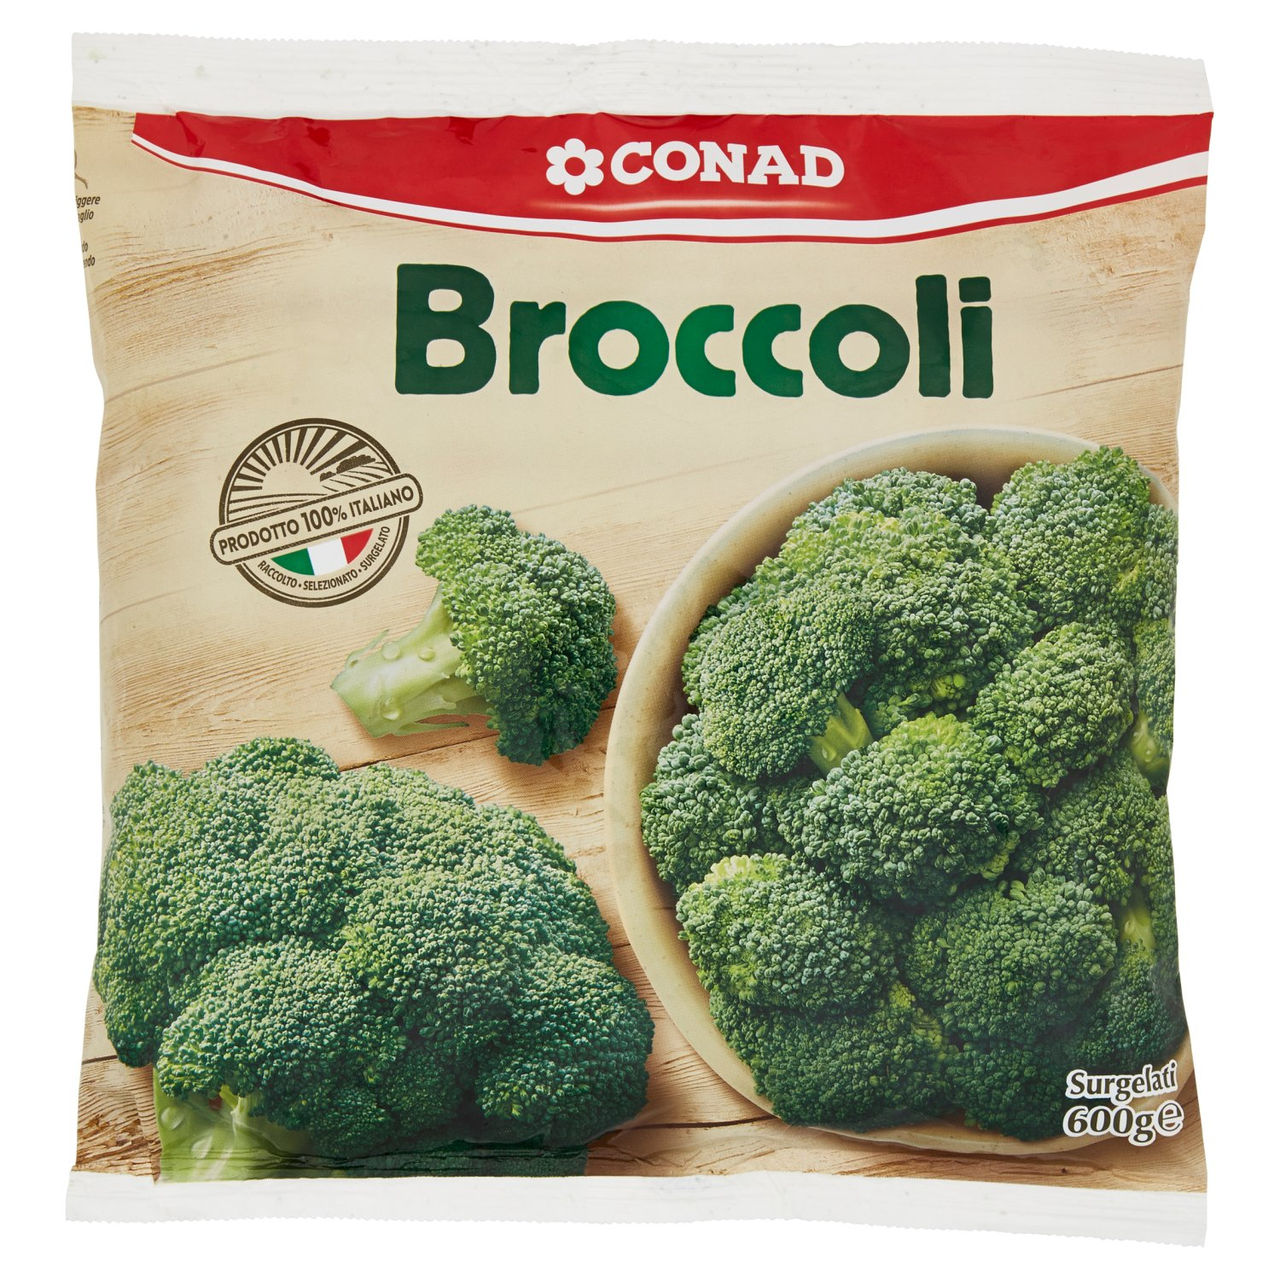 CONAD Broccoli Surgelati 600 g